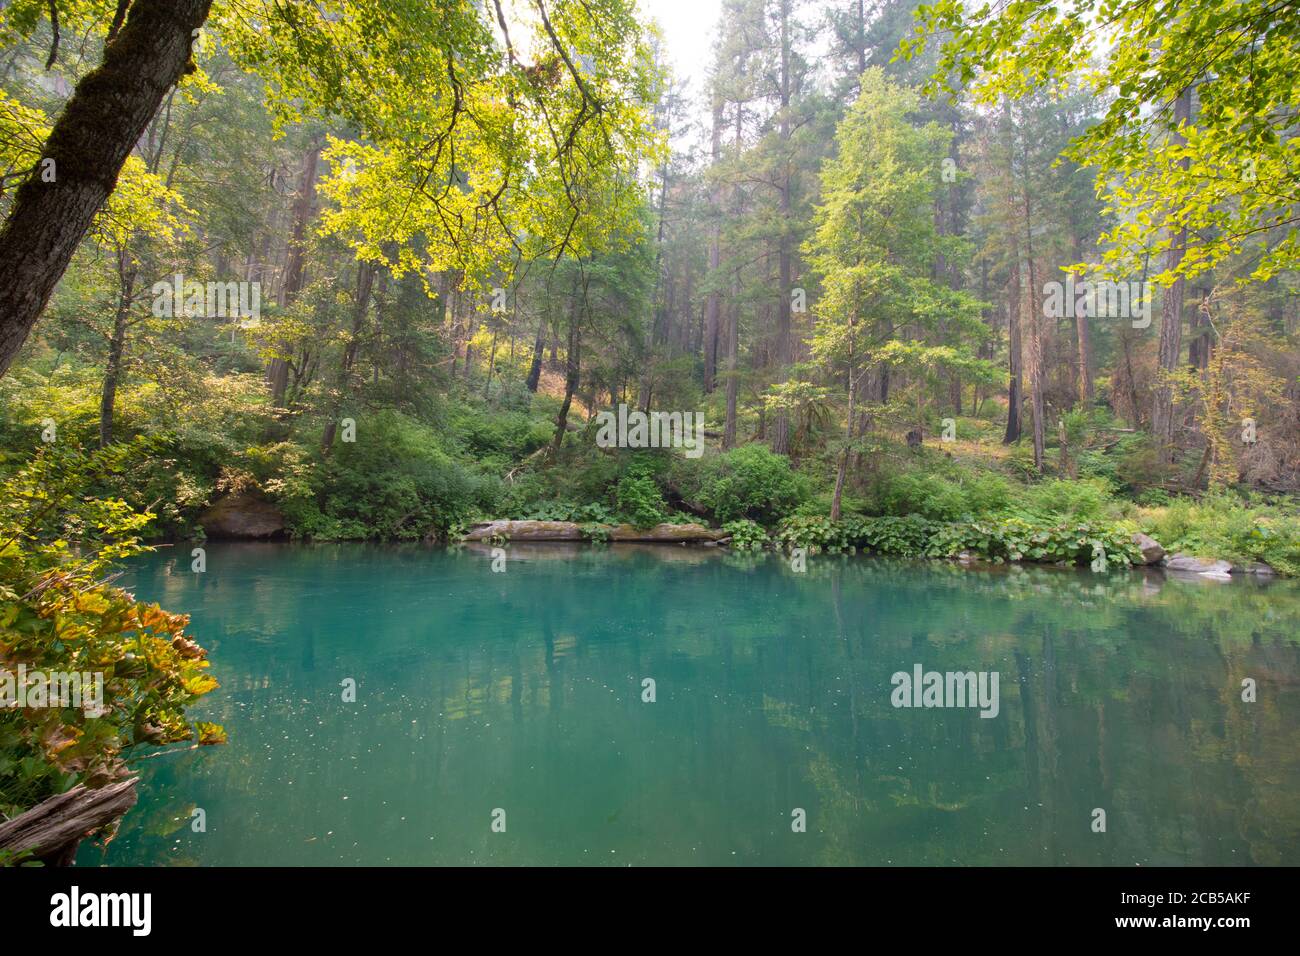 Blue Water stagni in fiume con verde foresta vegetazione su i lati del fiume Foto Stock